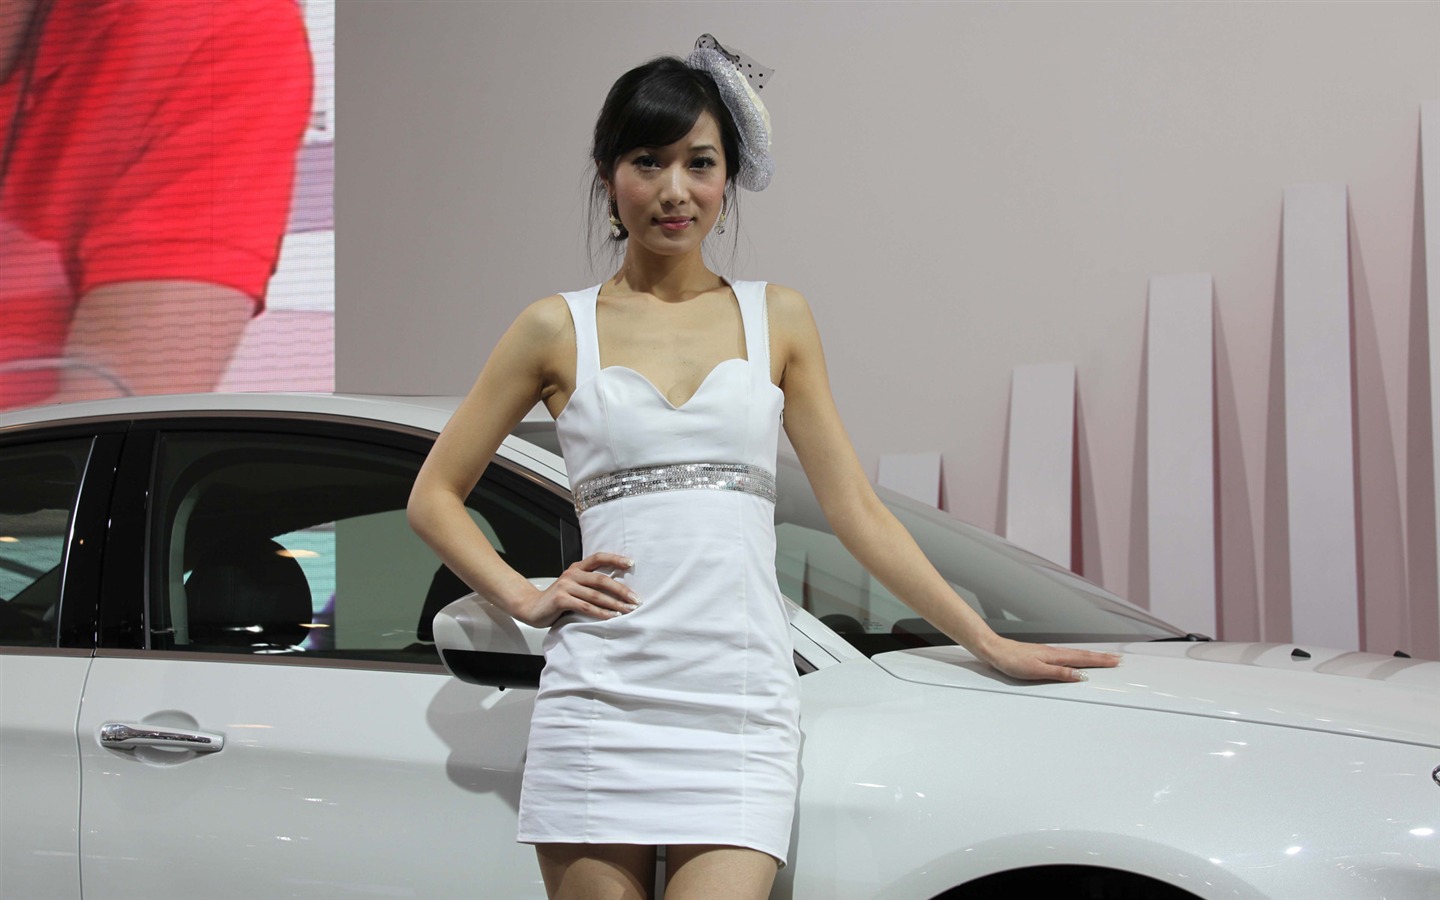 2010 v Pekingu Mezinárodním autosalonu krása (2) (vítr honí mraky práce) #33 - 1440x900